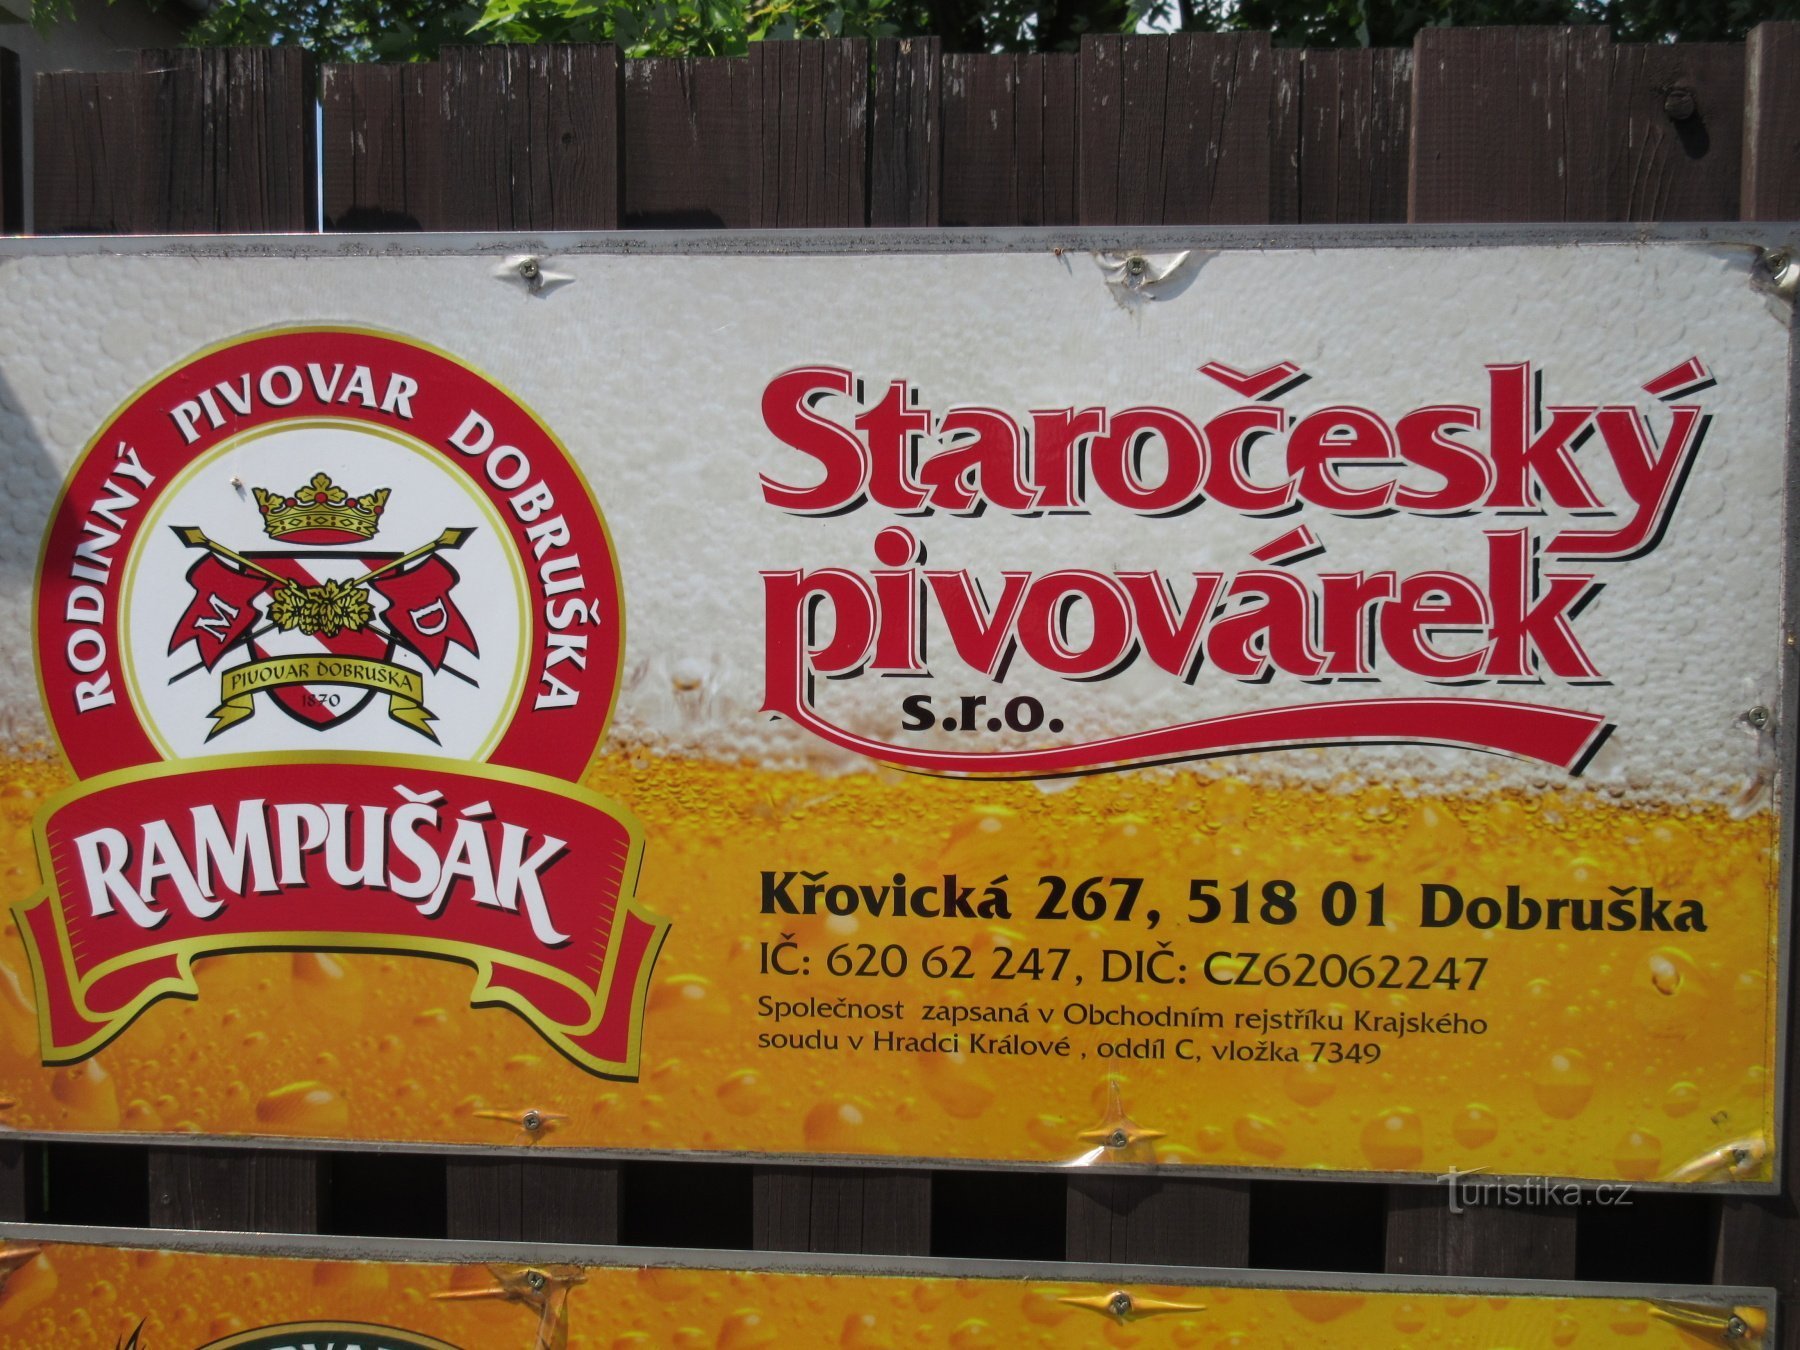 Dobruška - locul de naștere al FL Heka (Věka), centrul său istoric și fabrica de bere Rampušák